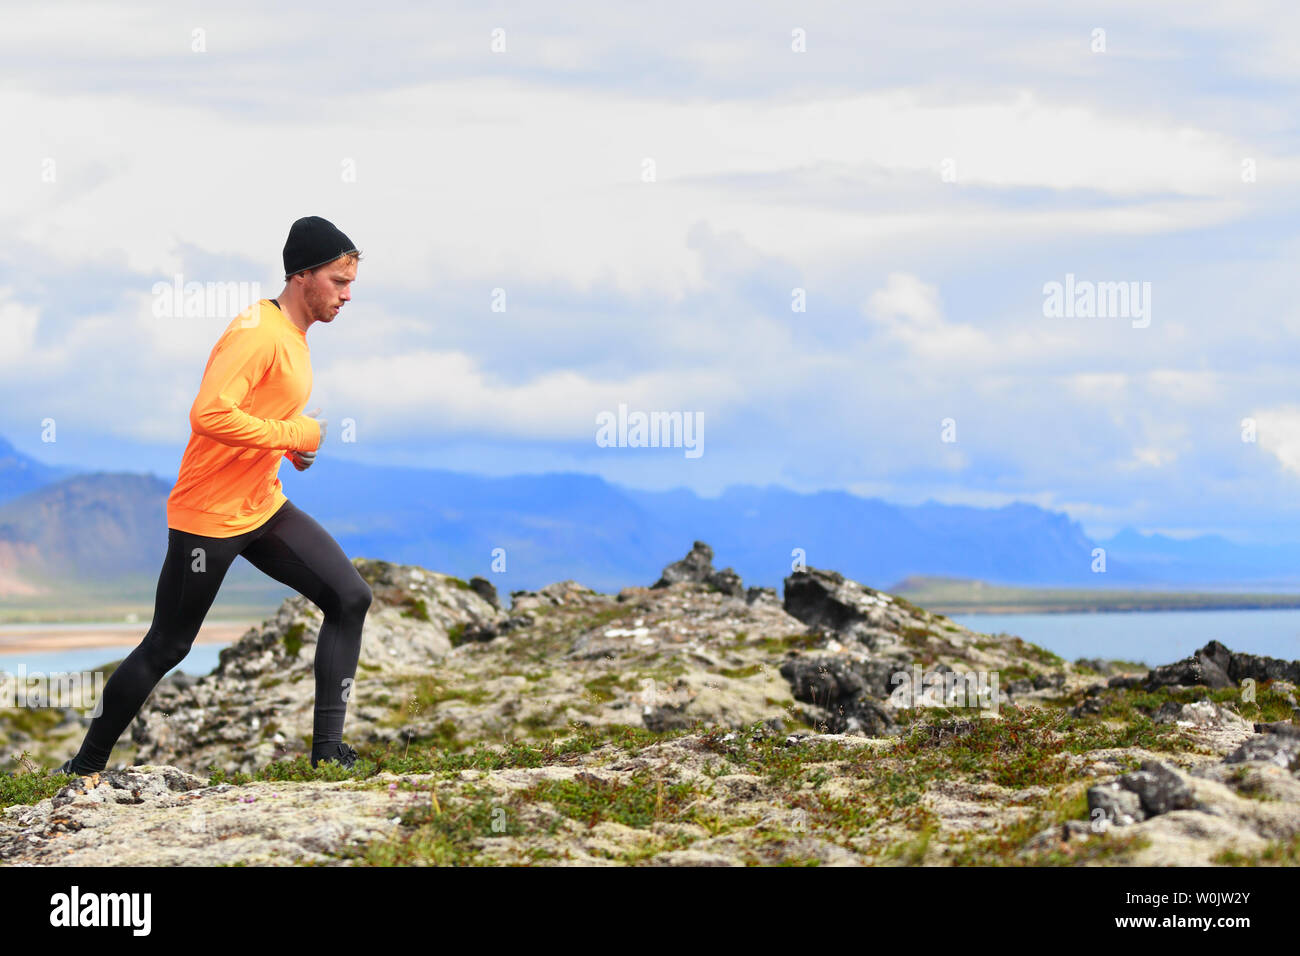 Laufsport Mann in Cross Country trail laufen. Männliche Läufer trainieren und Training im Freien in der schönen Berg Natur Landschaft leben gesunde, aktive Wellness lifestyle außerhalb. Stockfoto